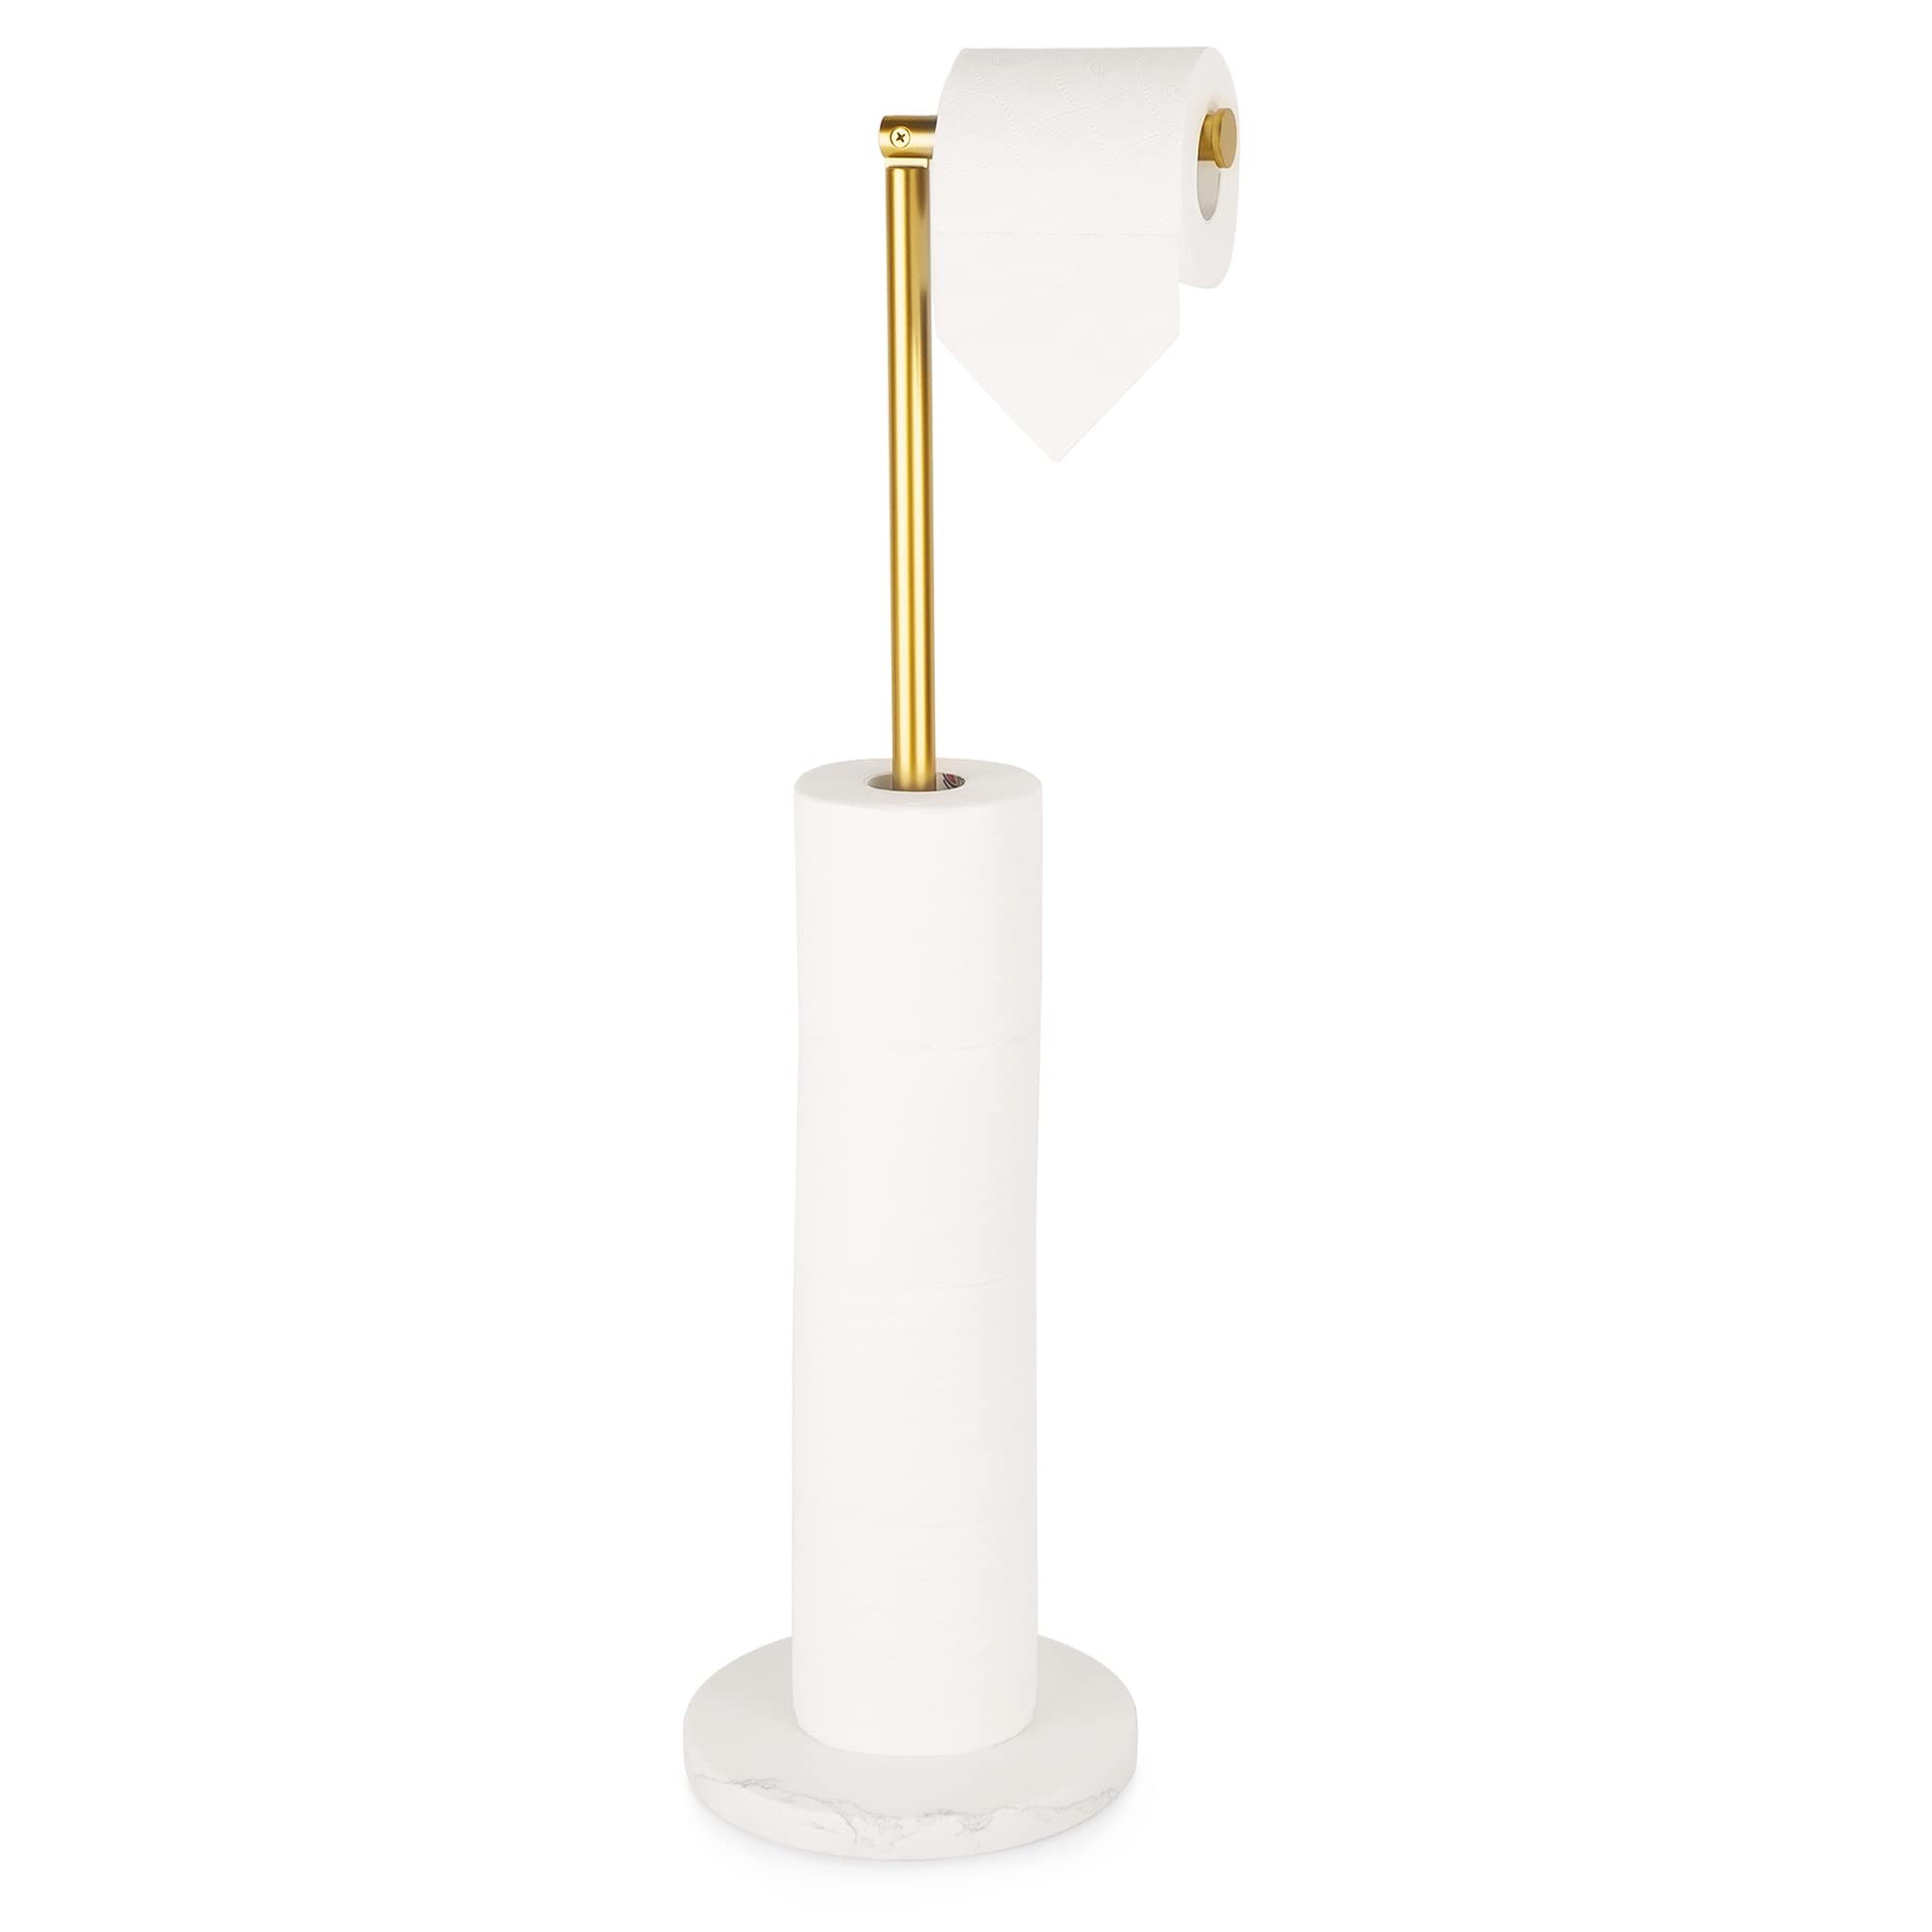 Kitchen Brass Marble Paper Towel Holder / Gold Tissue Holder Stand